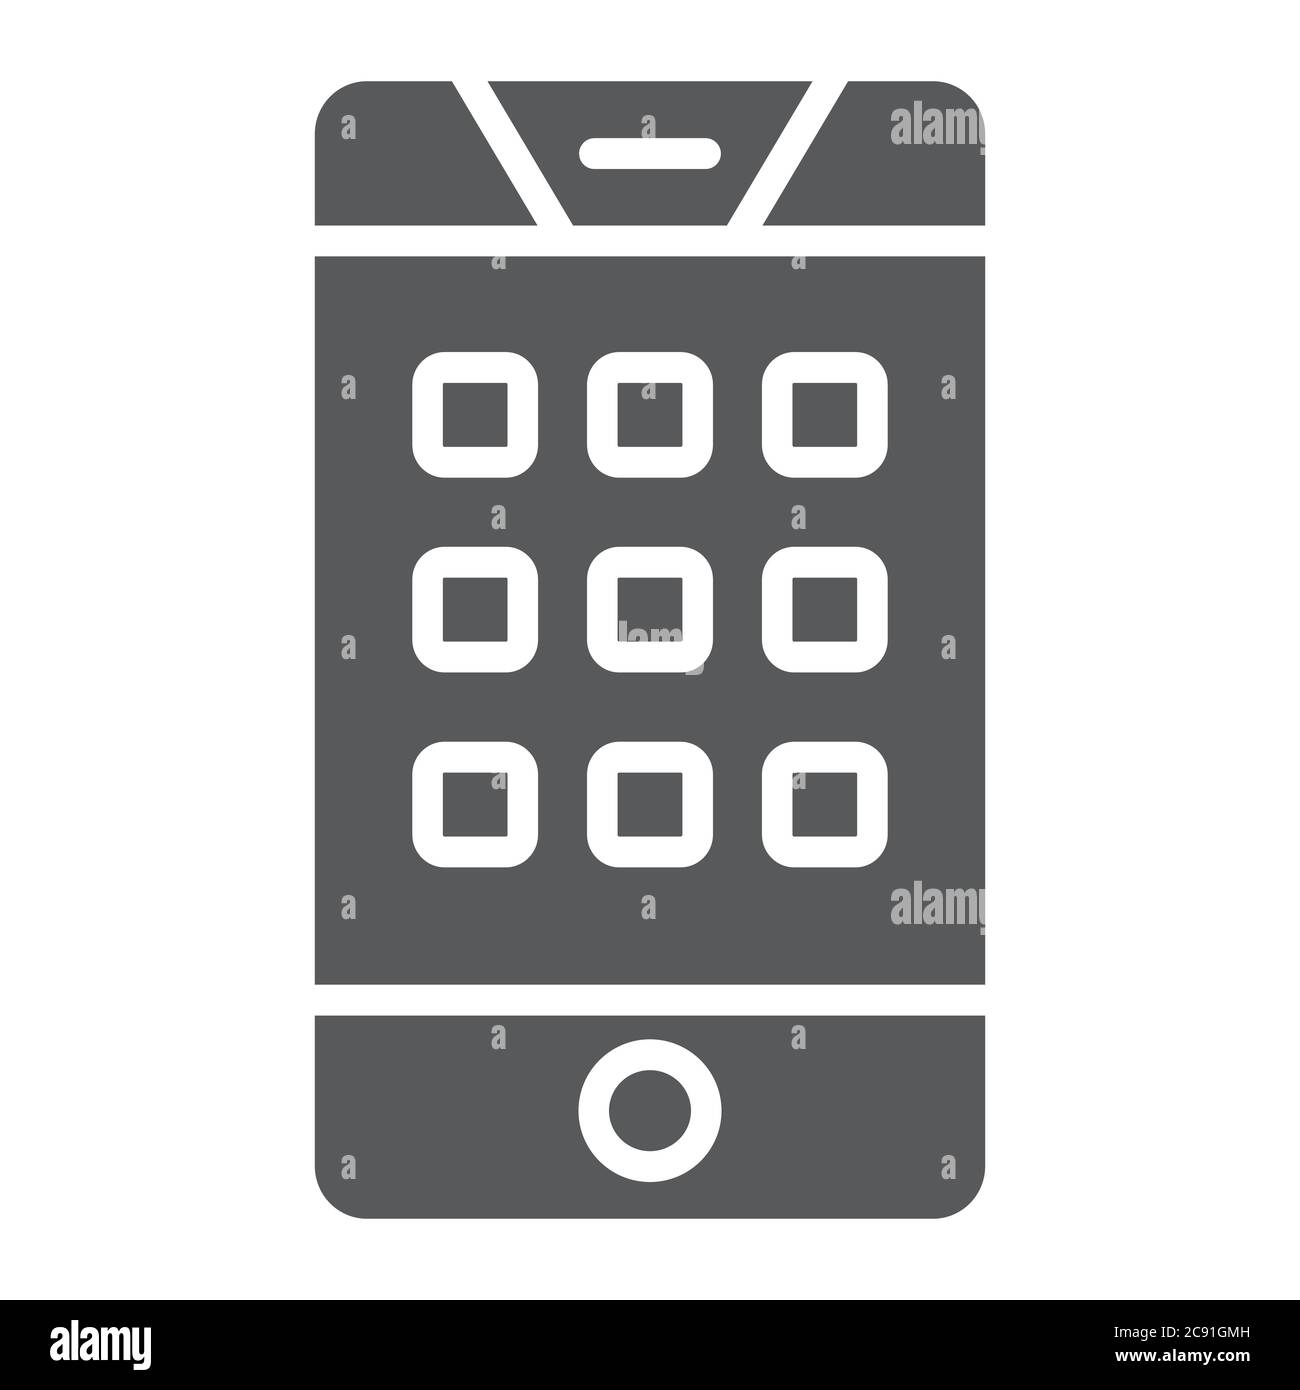 Wählen Sie die Nummer auf dem Telefon Glyph-Symbol, Handy und Anruf,  Tastatur auf Smartphone-Zeichen, Vektorgrafiken, ein solides Muster auf  einem weißen Hintergrund Stock-Vektorgrafik - Alamy